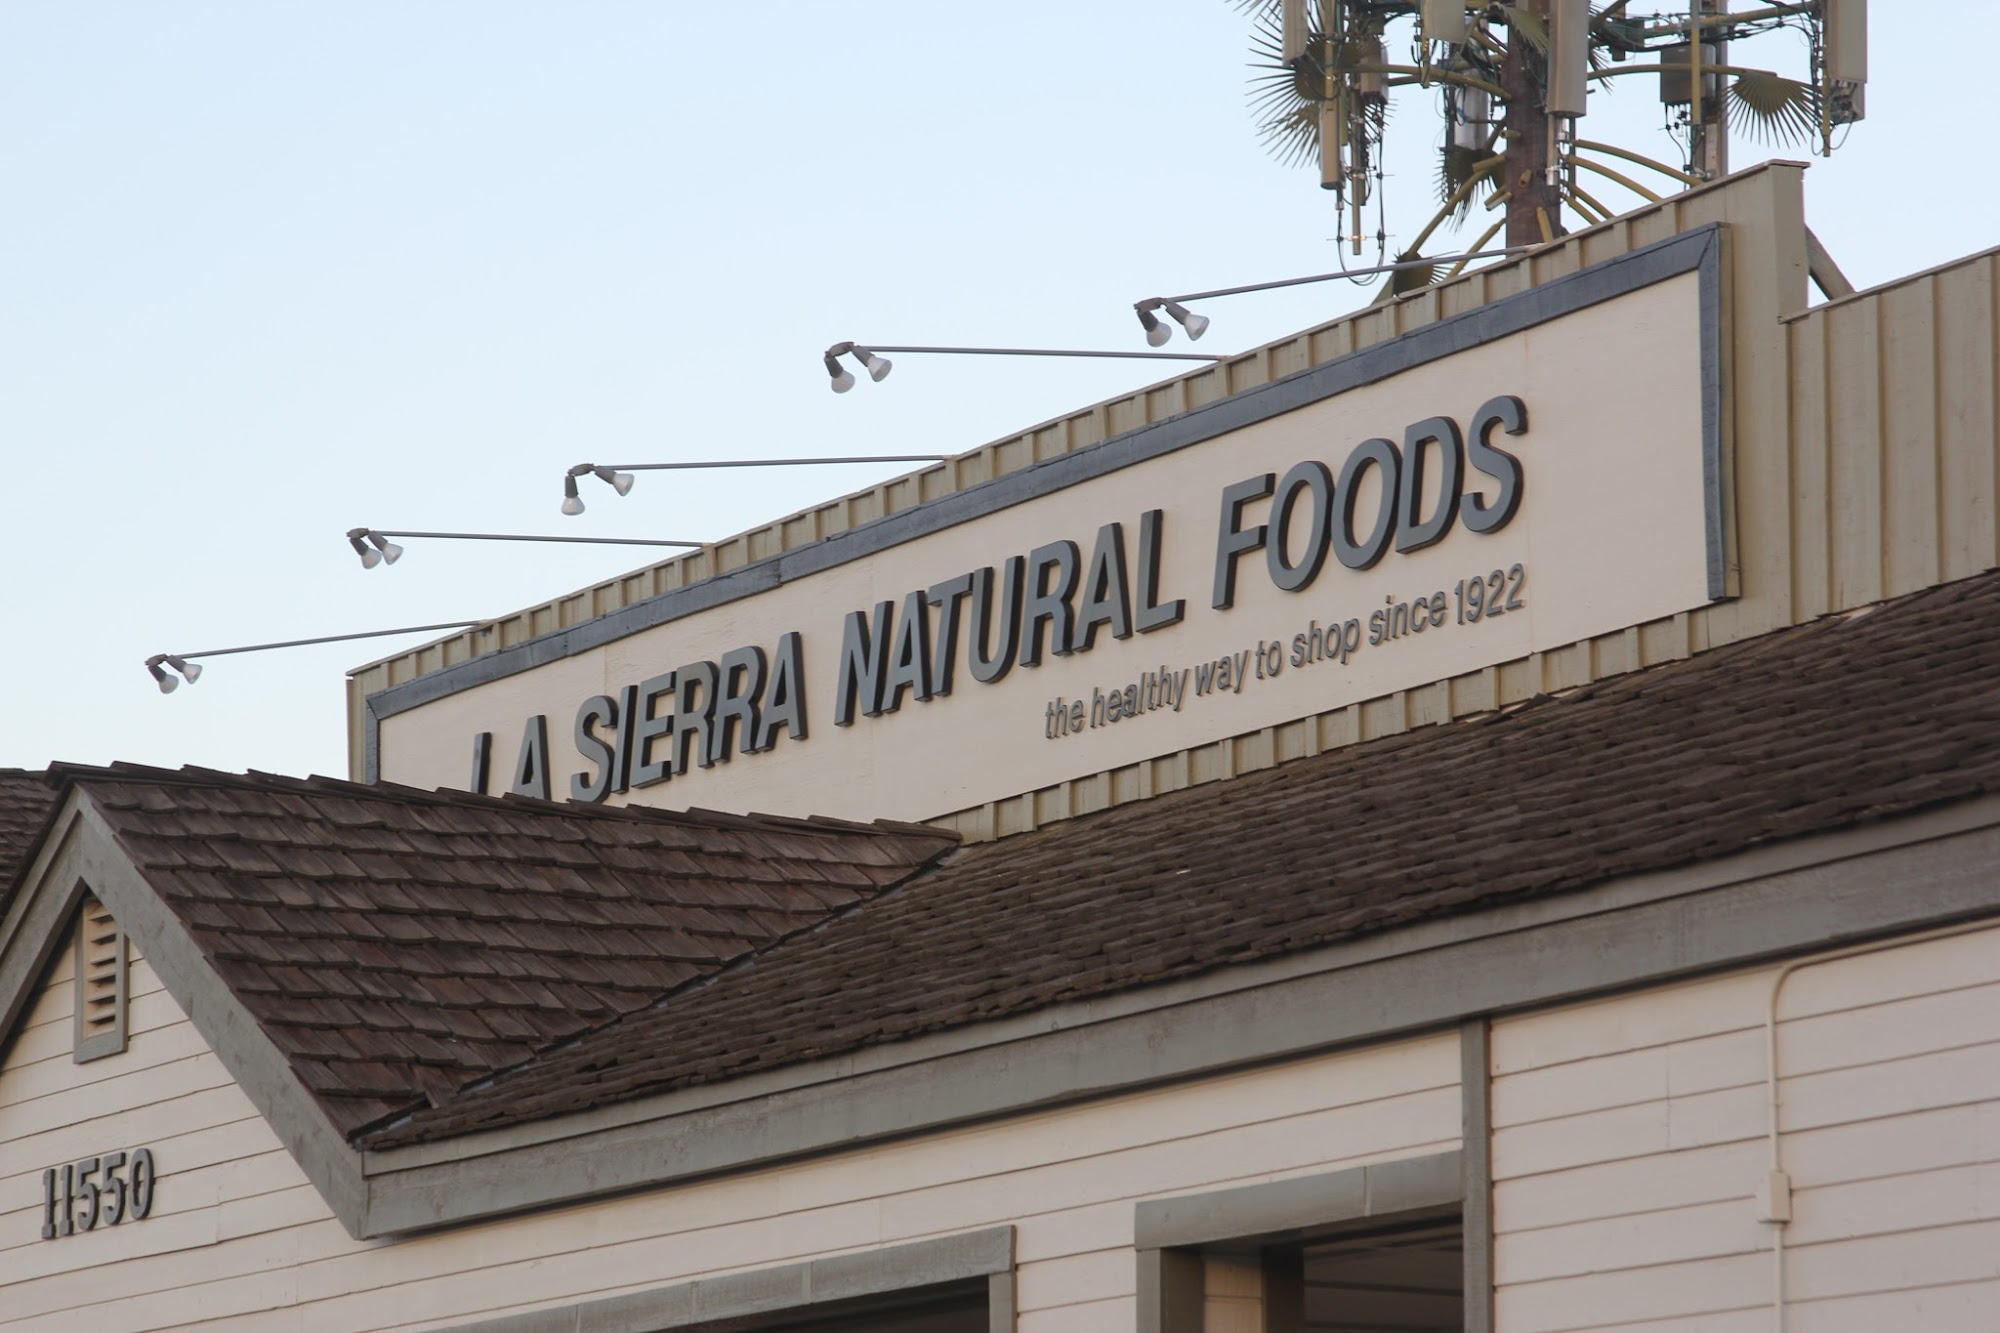 La Sierra Natural Foods